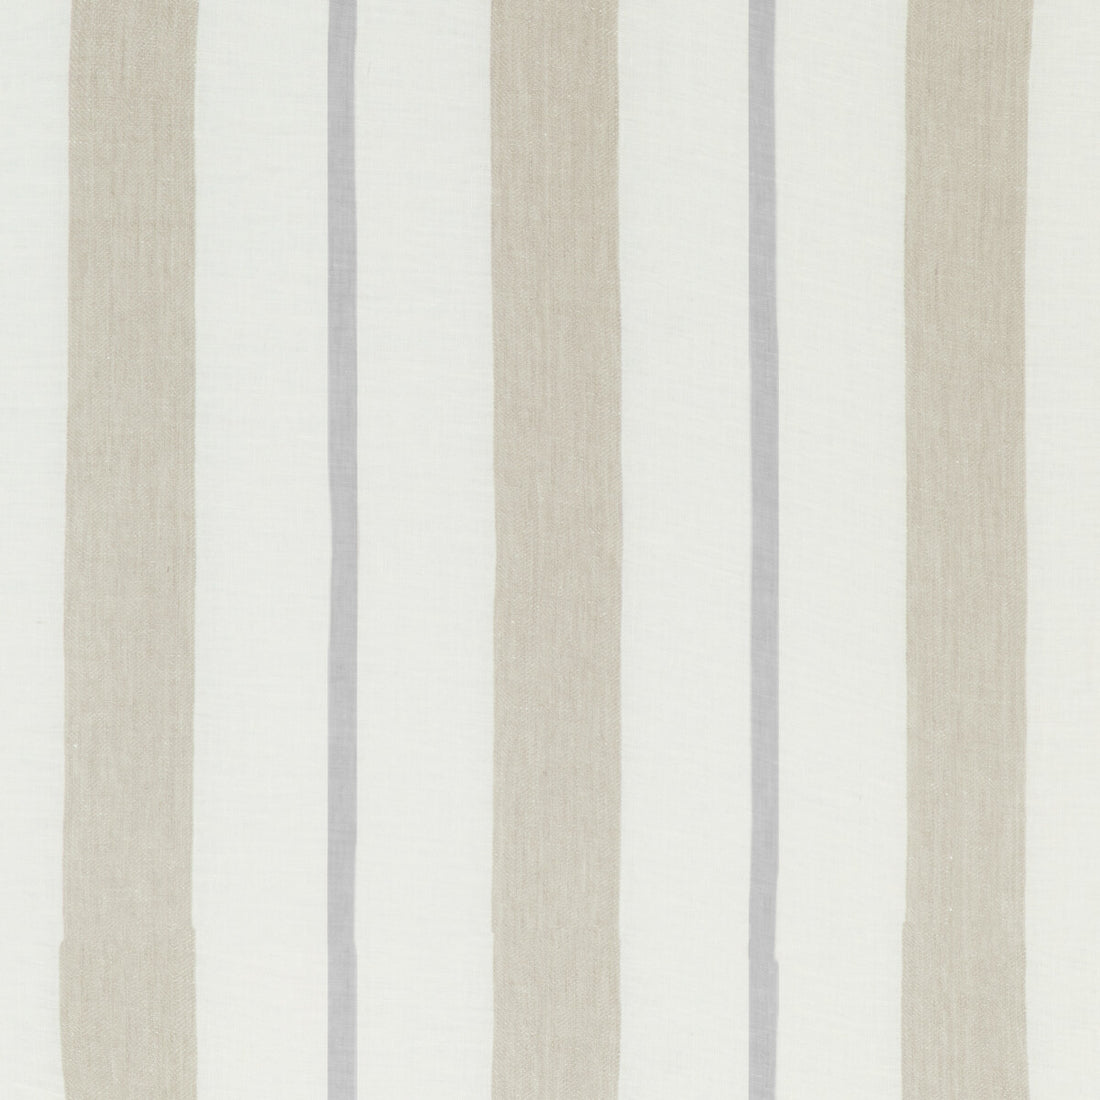 Kravet Design fabric in 4845-116 color - pattern 4845.116.0 - by Kravet Design